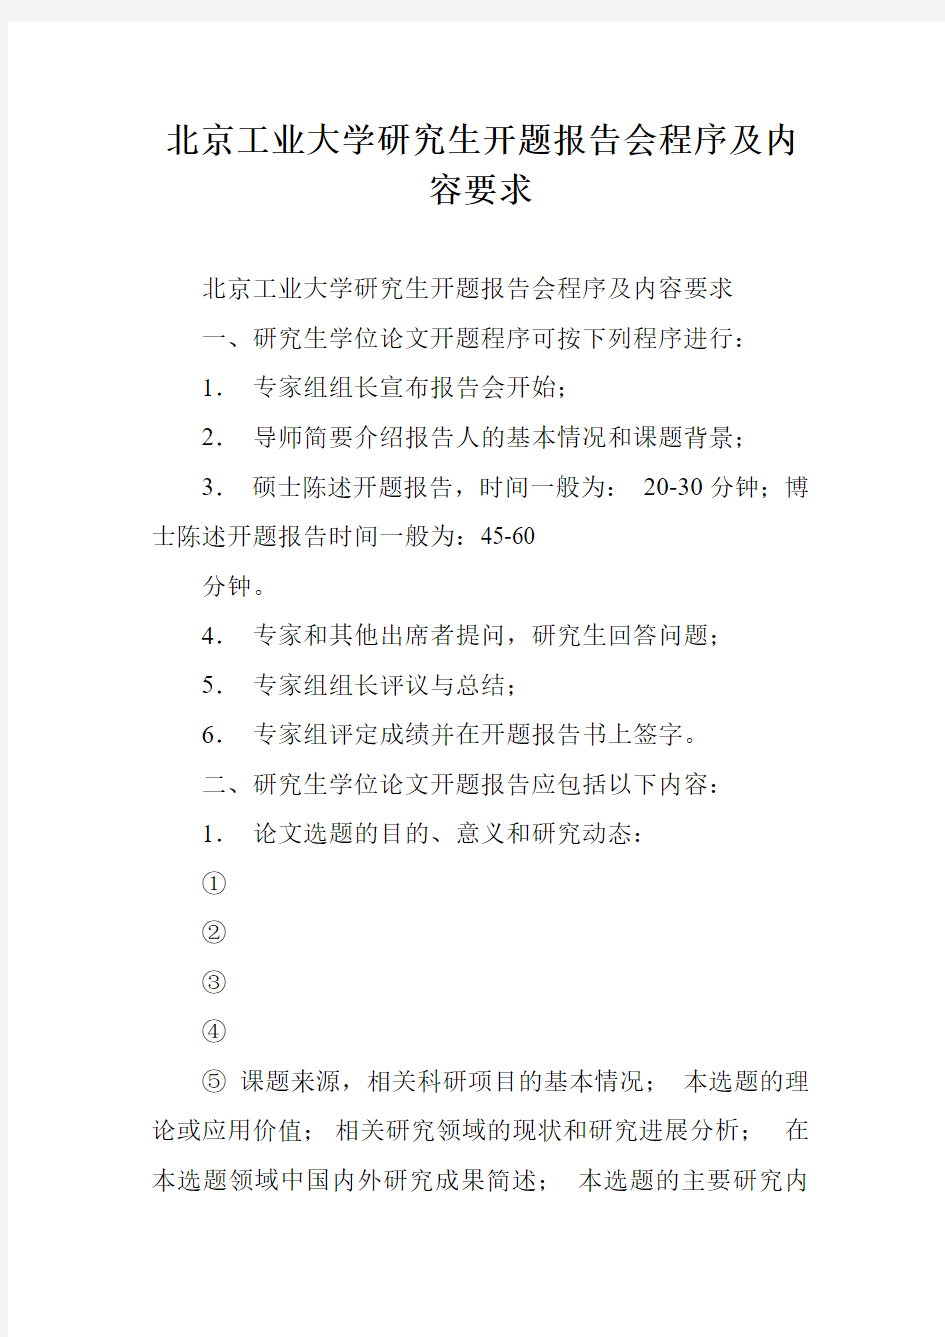 北京工业大学研究生开题报告会程序及内容要求